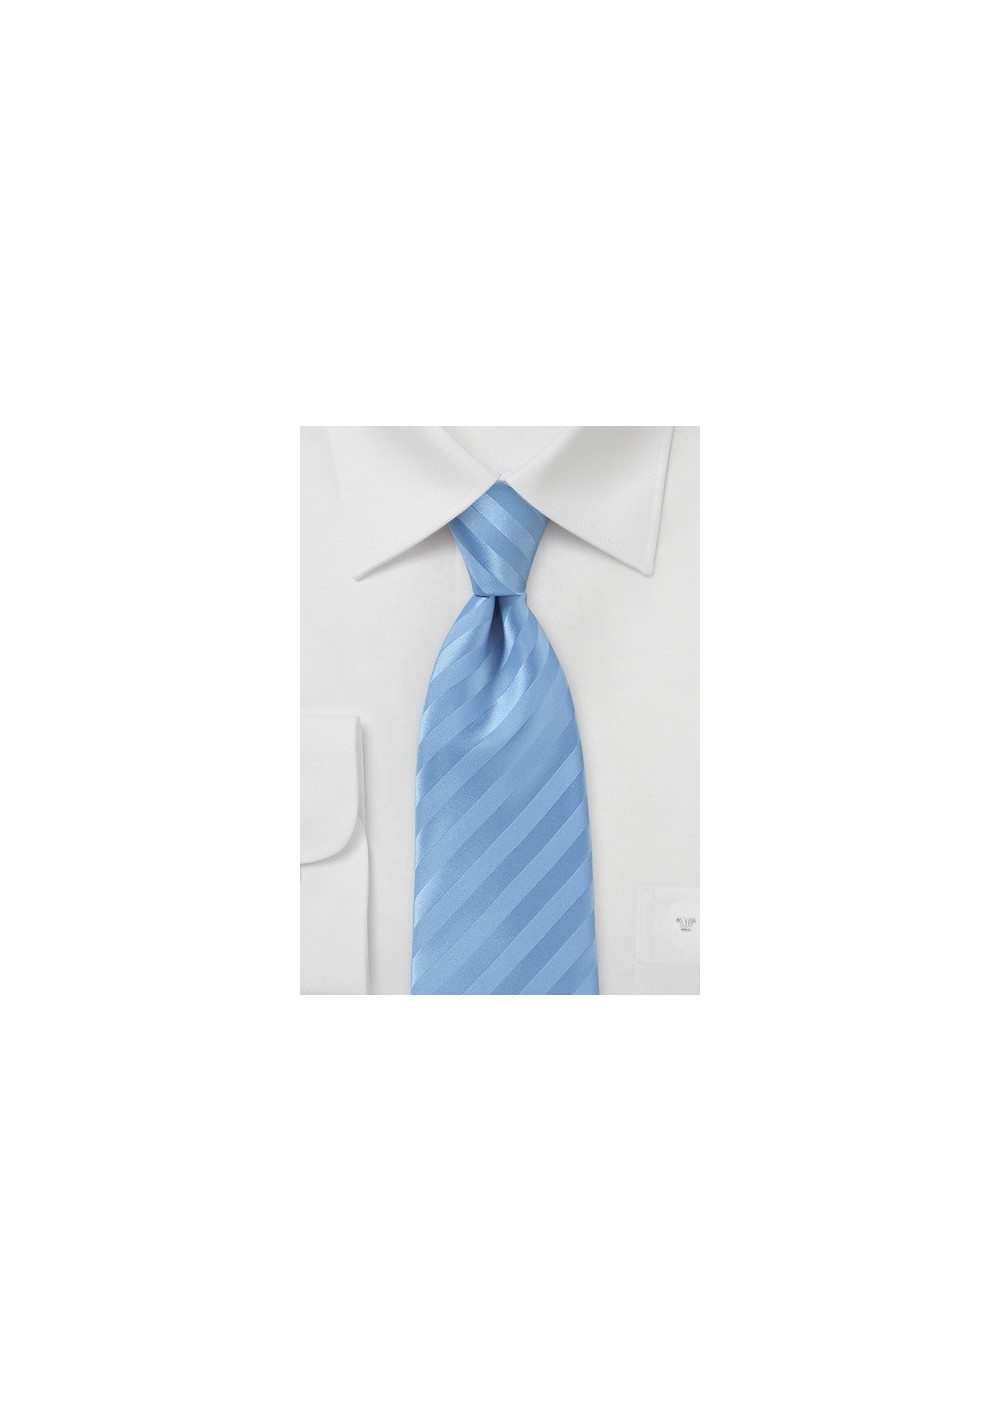 Narrow Men's Tie in Cornflower Blue